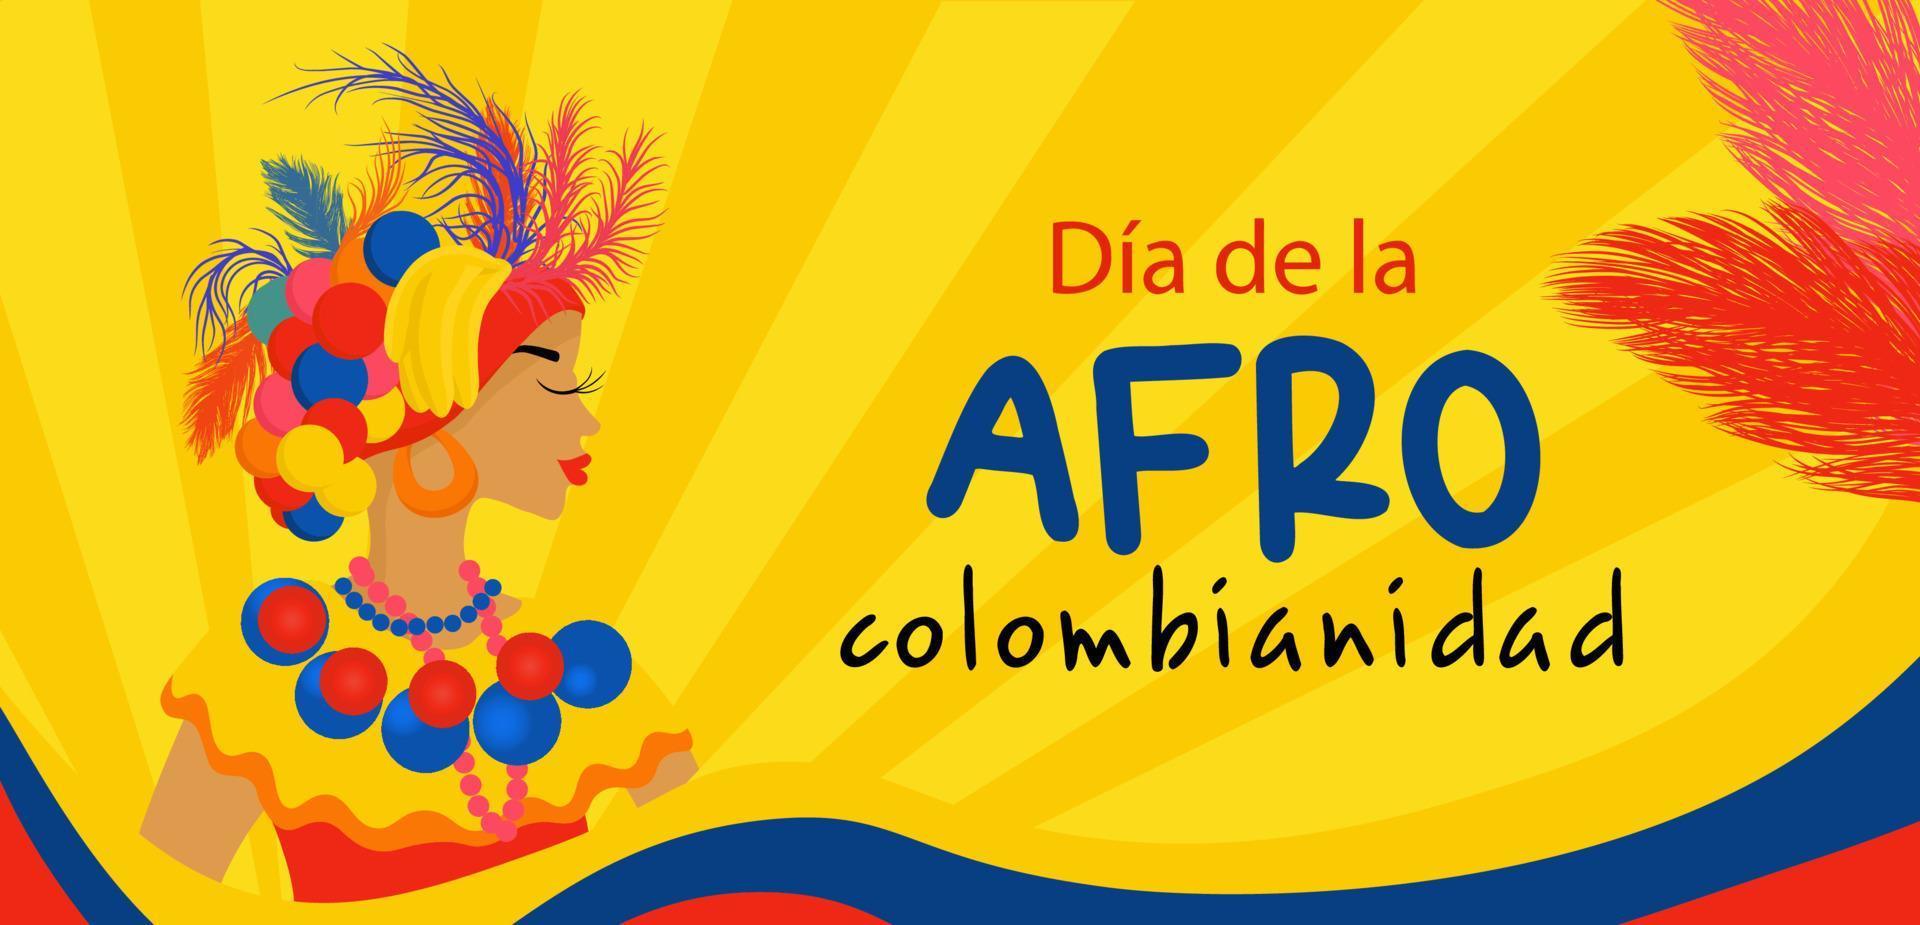 afrocolombiano giorno nel Colombia nel spagnolo. orizzontale bandiera nel luminosa colori viaggio concetto per Colombia. vettore